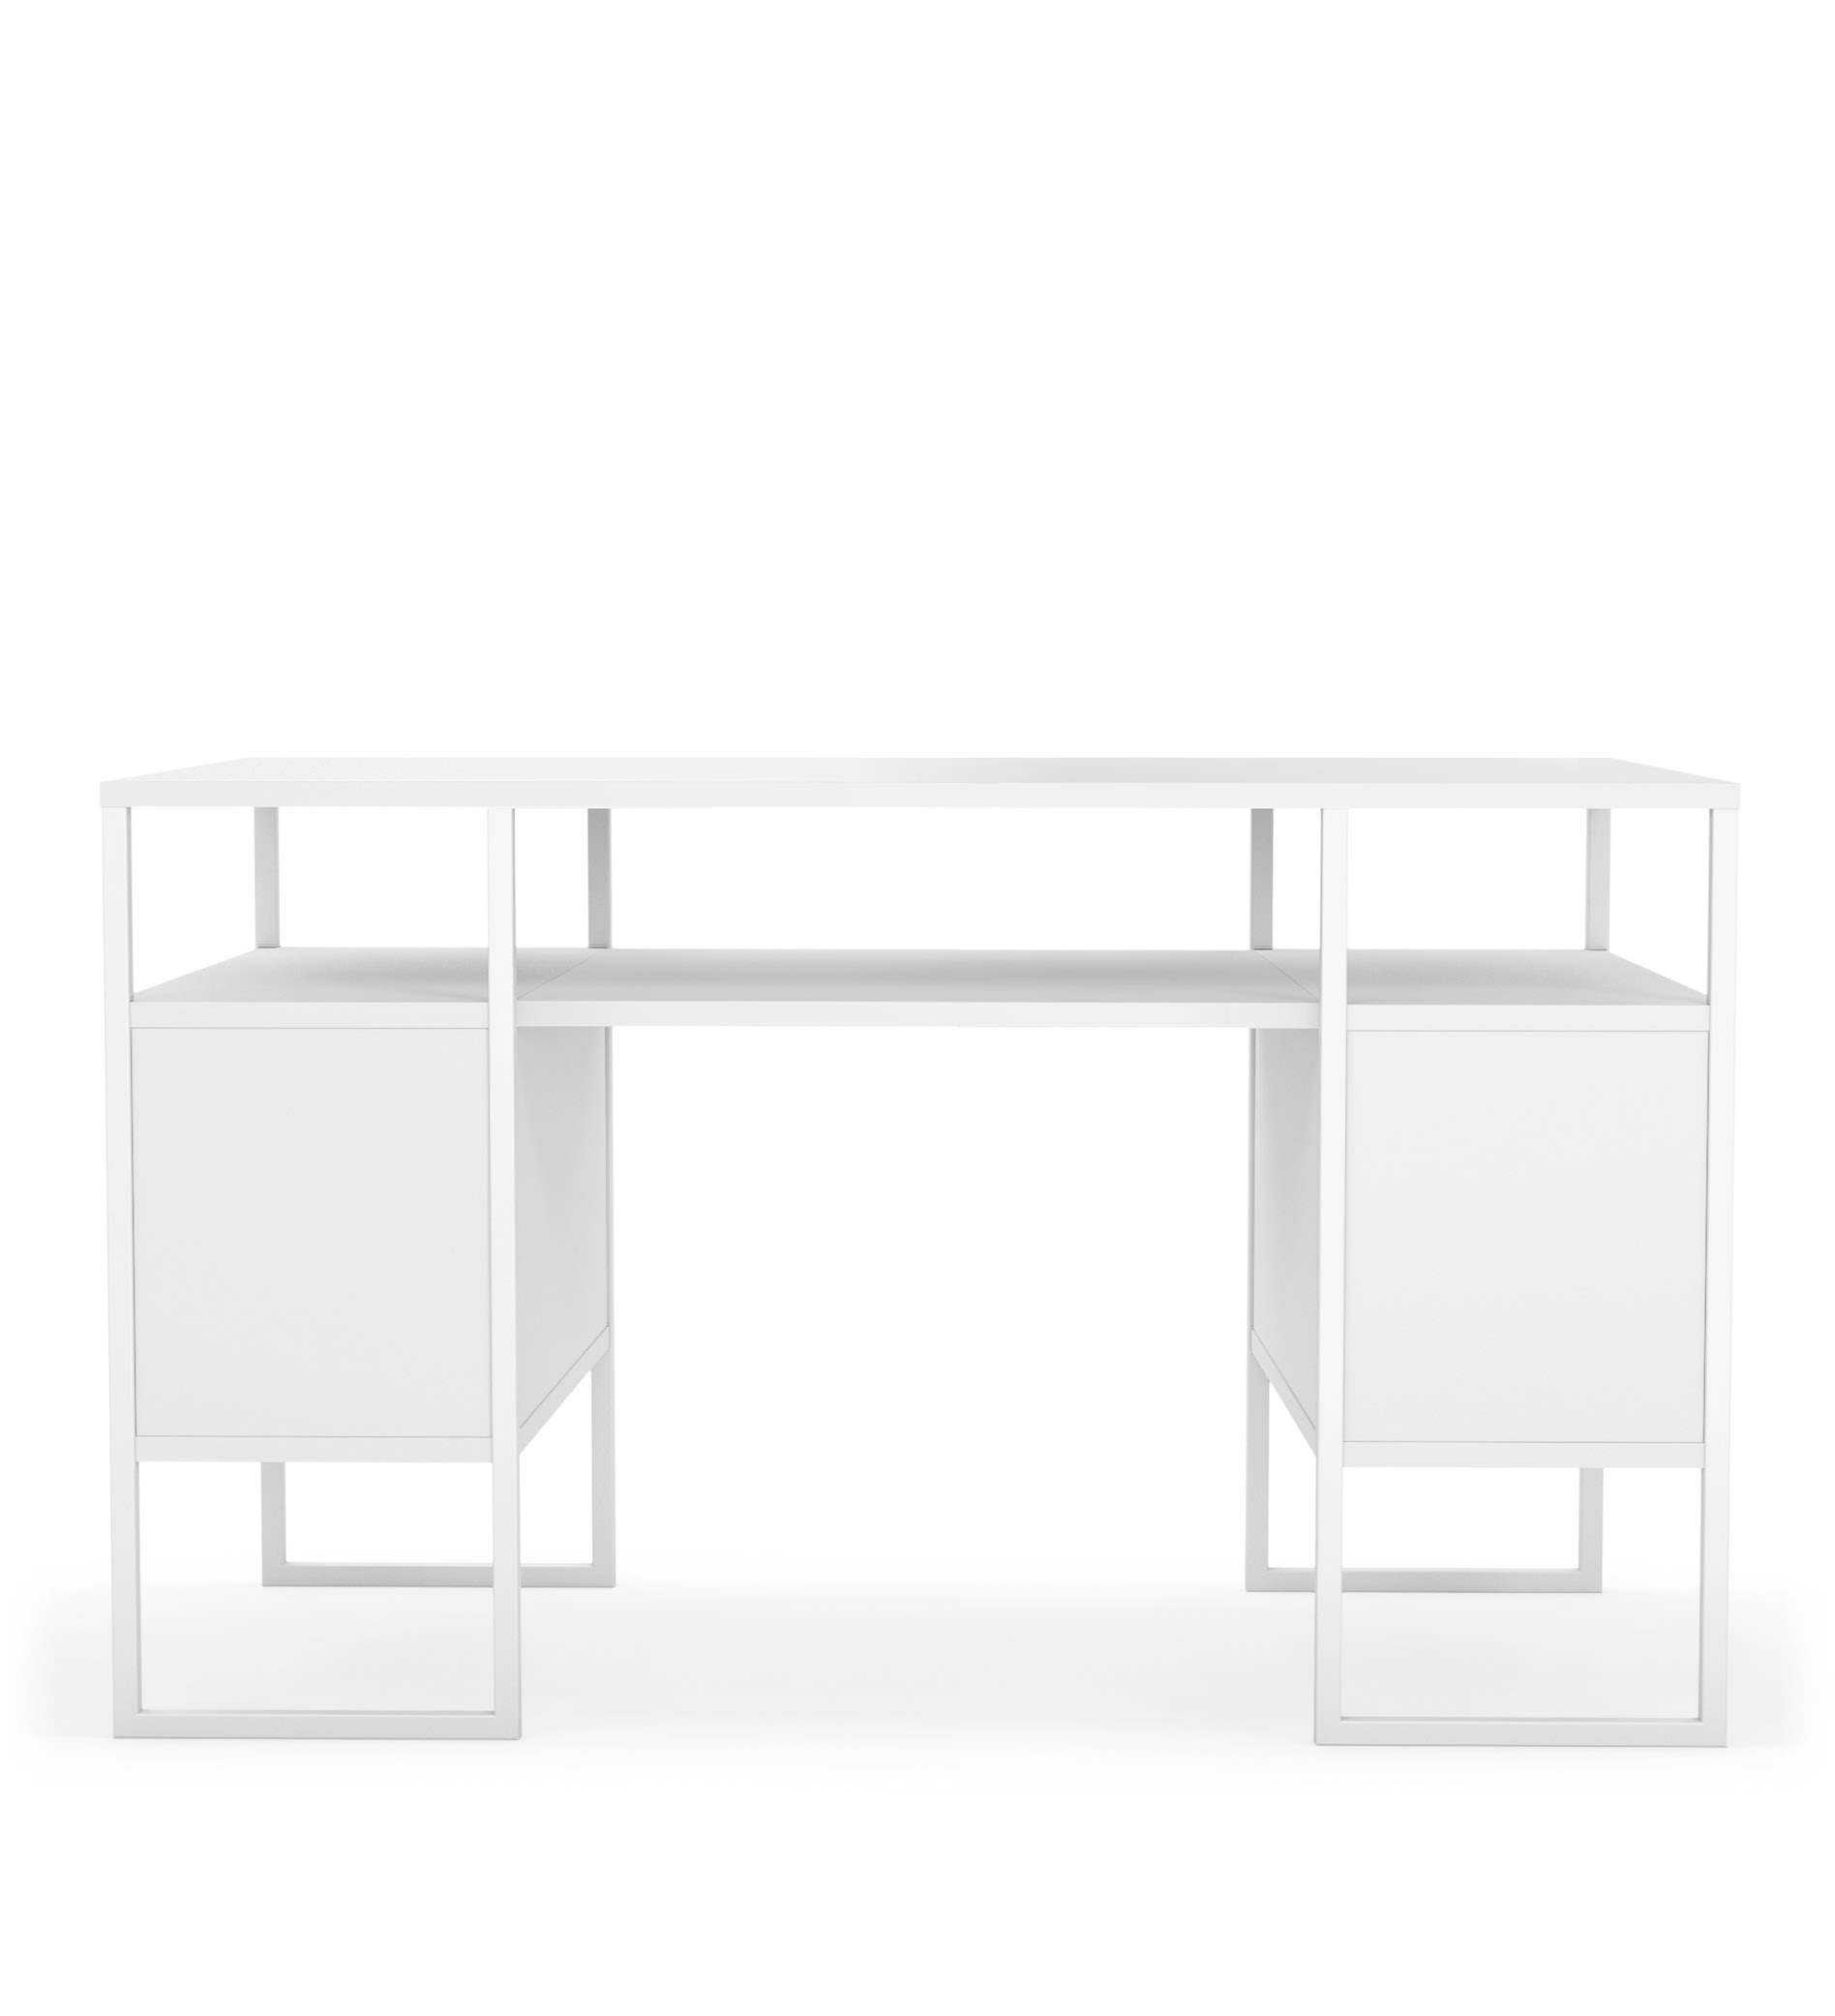 Scrivanie di alta qualità per il vostro ufficio: i tavoli Sedus